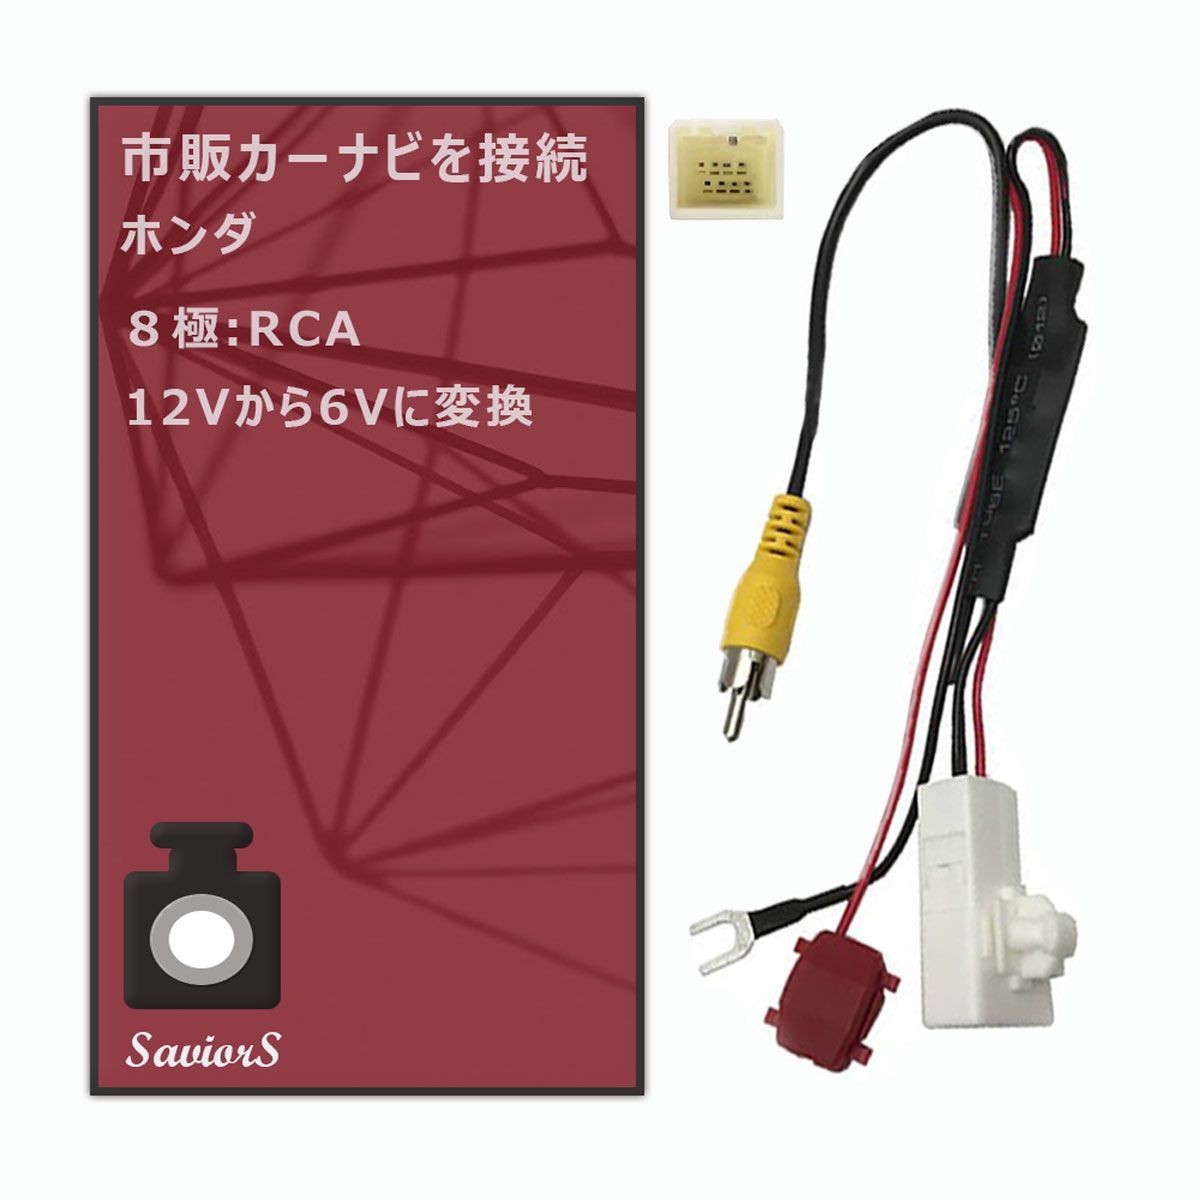 日本製人気ホンダ純正 VXM-145VFi CCD サイドカメラ バックカメラ 2台set 入力変換アダプタ 付 ワイヤレス付 純正品